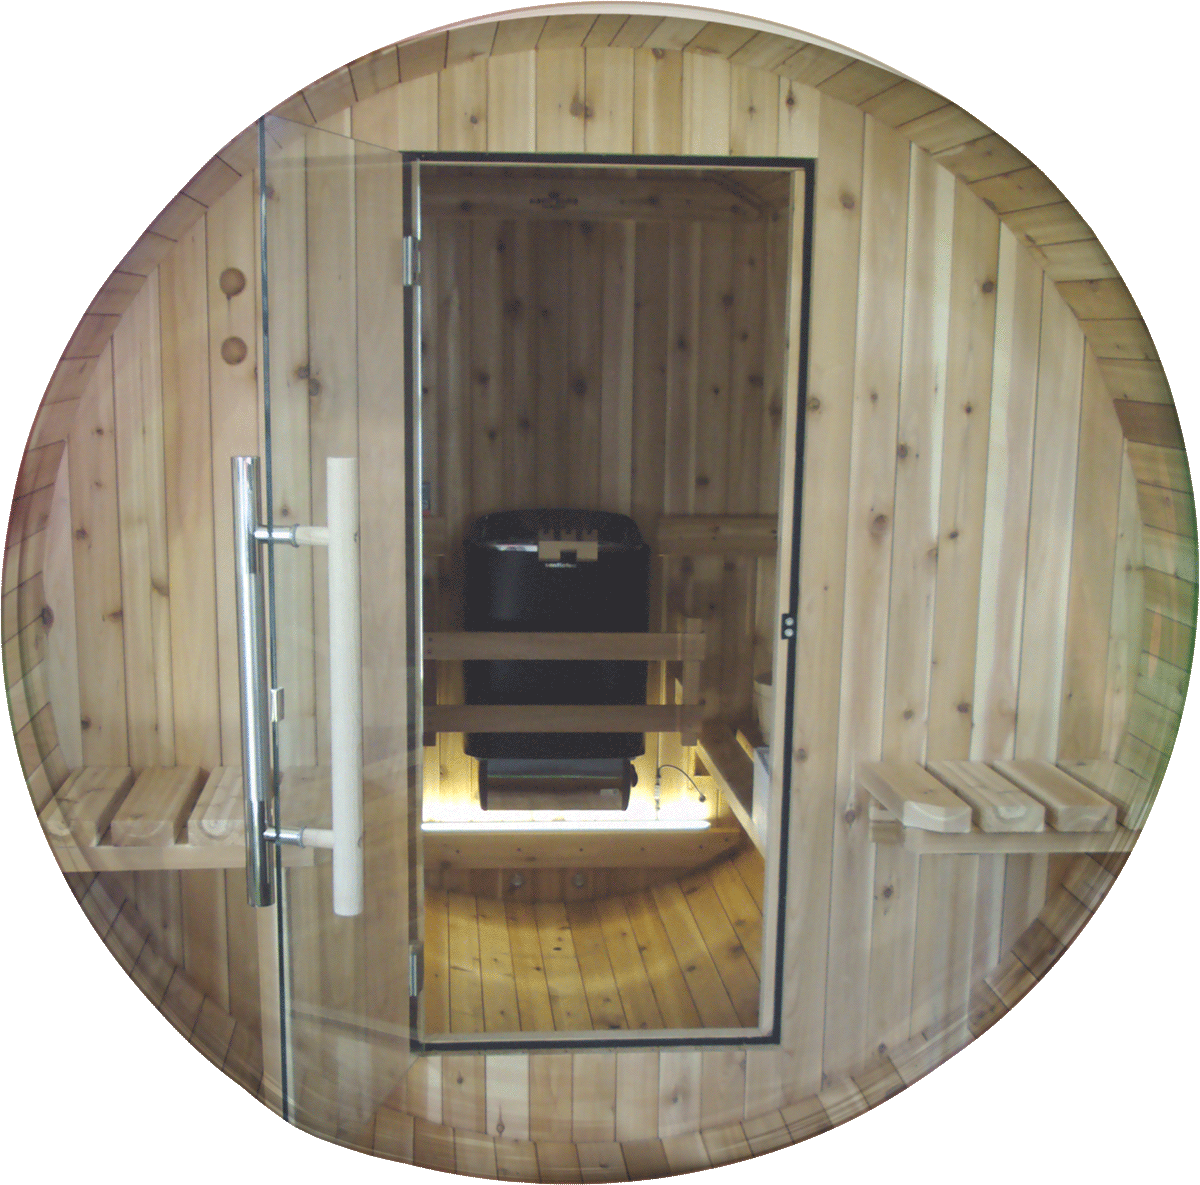 Photographie de l'intérieur d'un sauna en bois